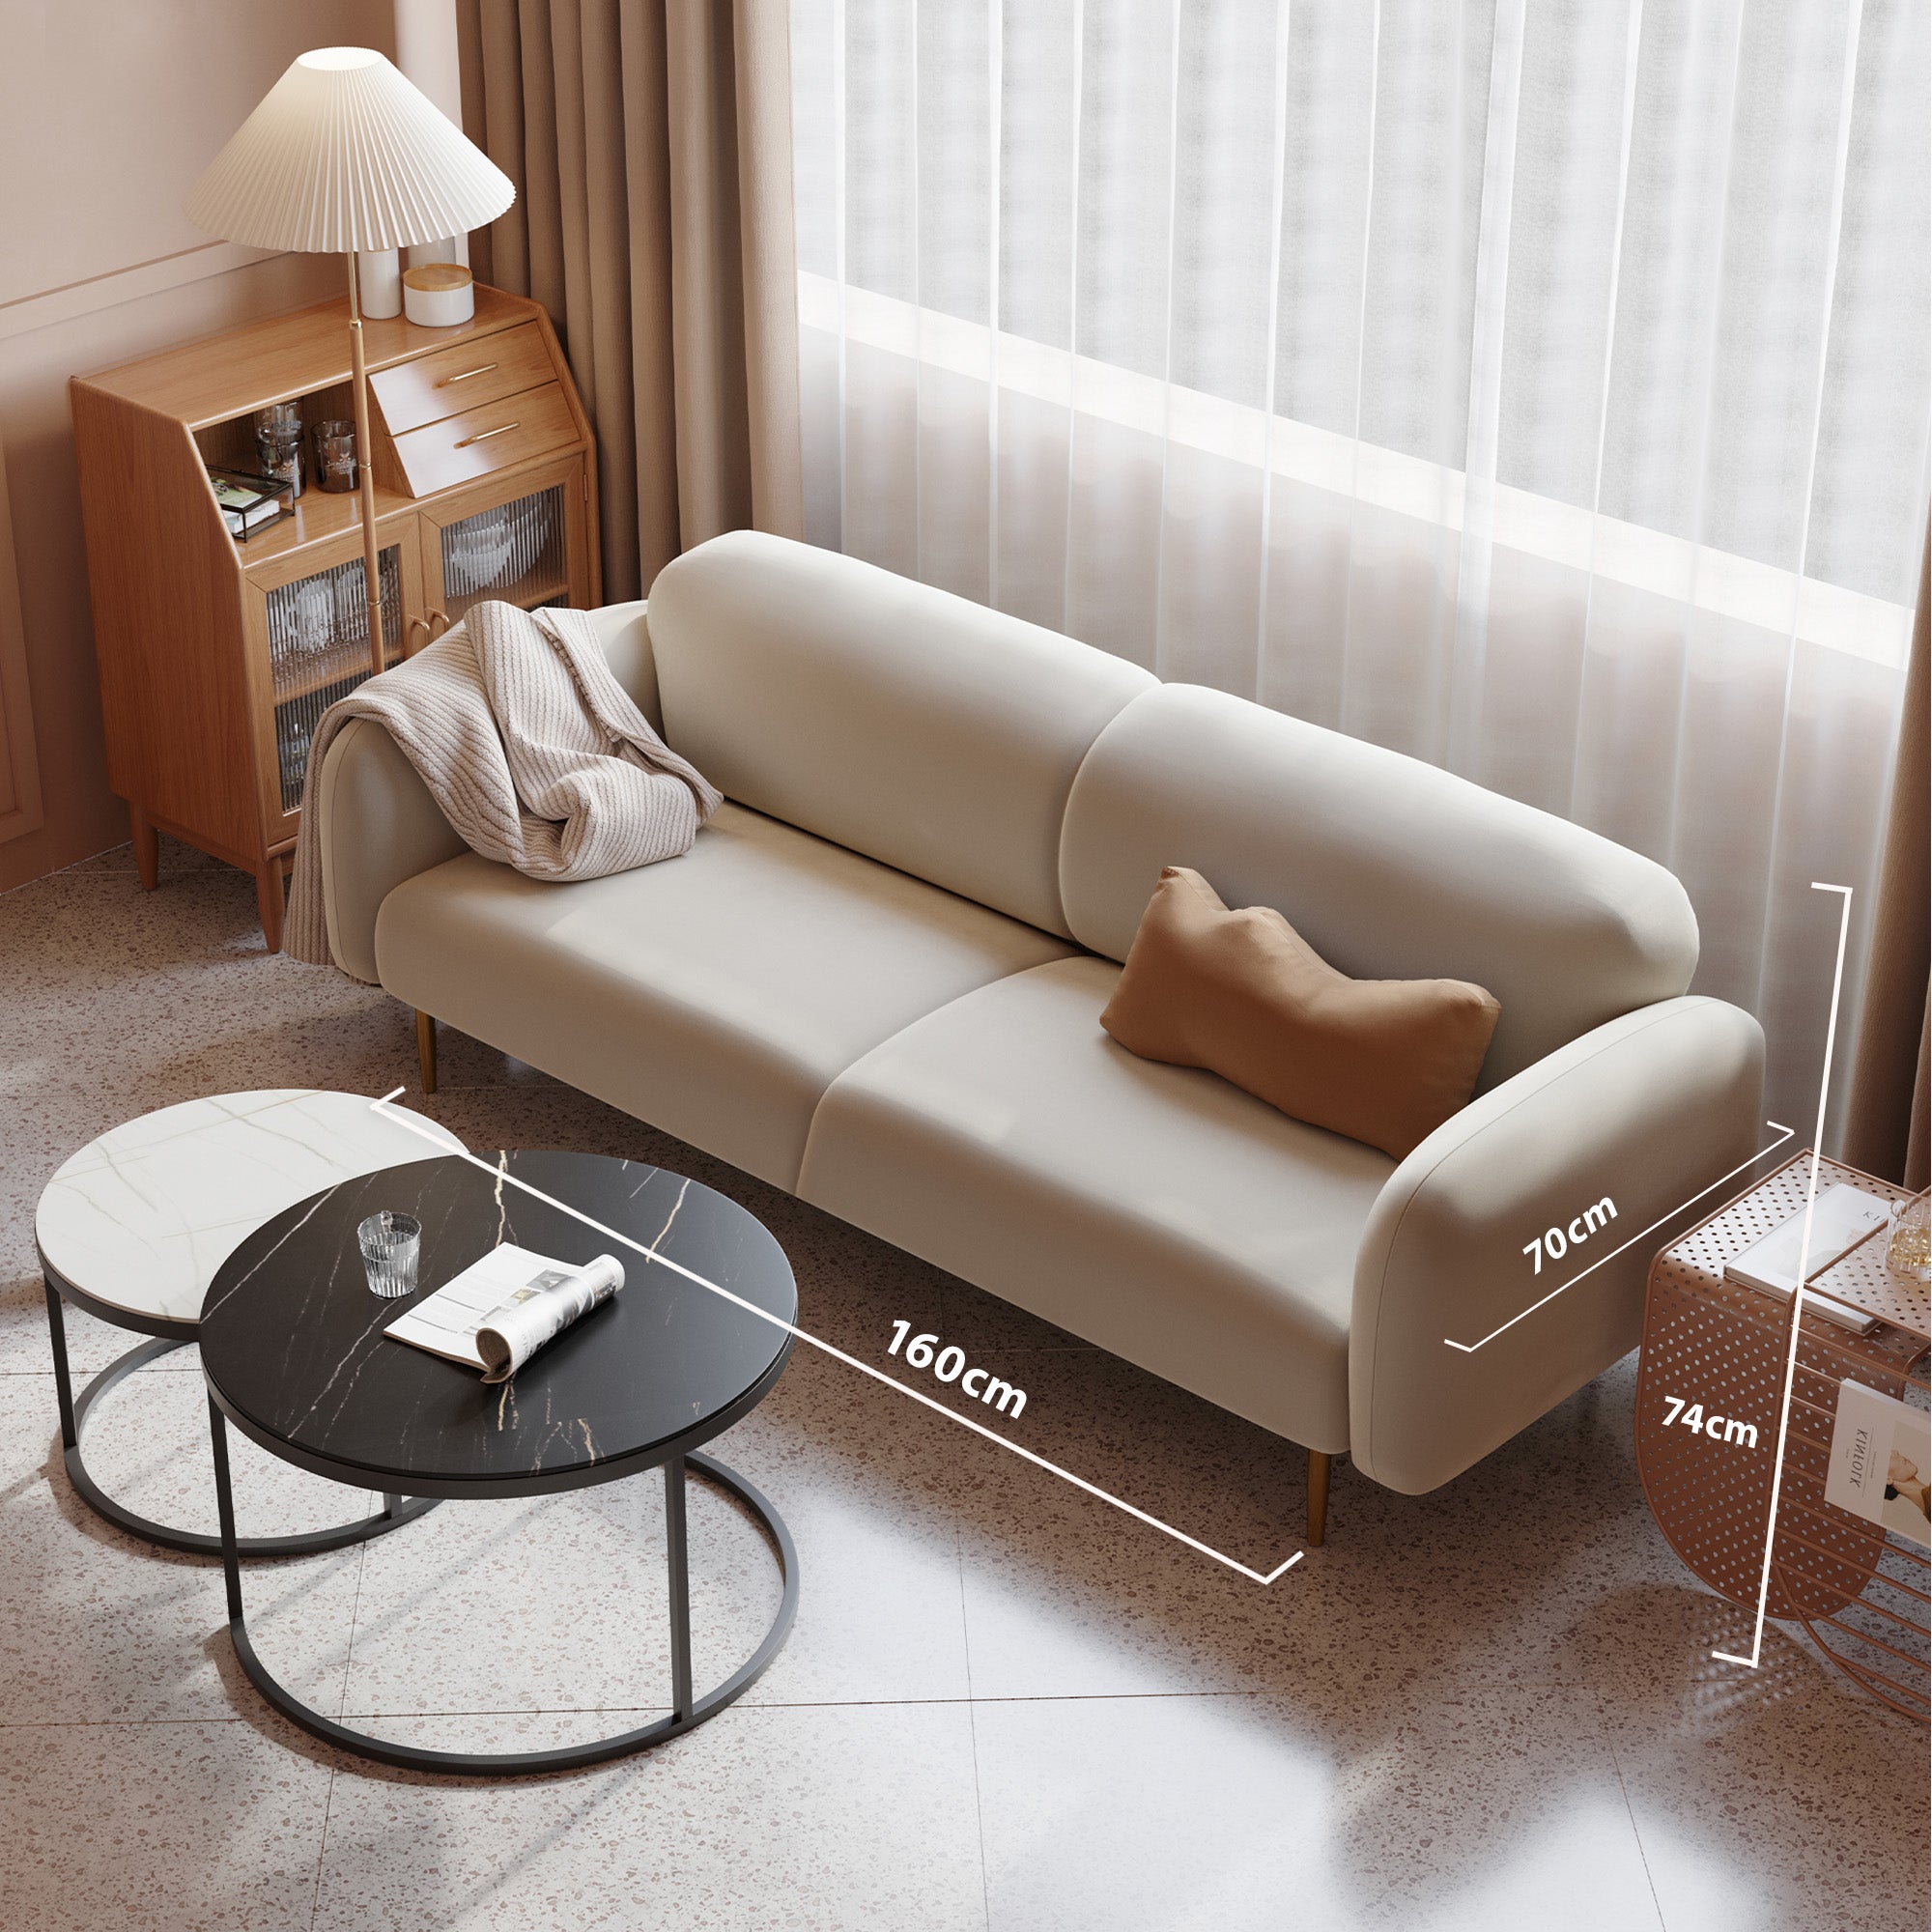 Delary 2 Seater Linen Sofa